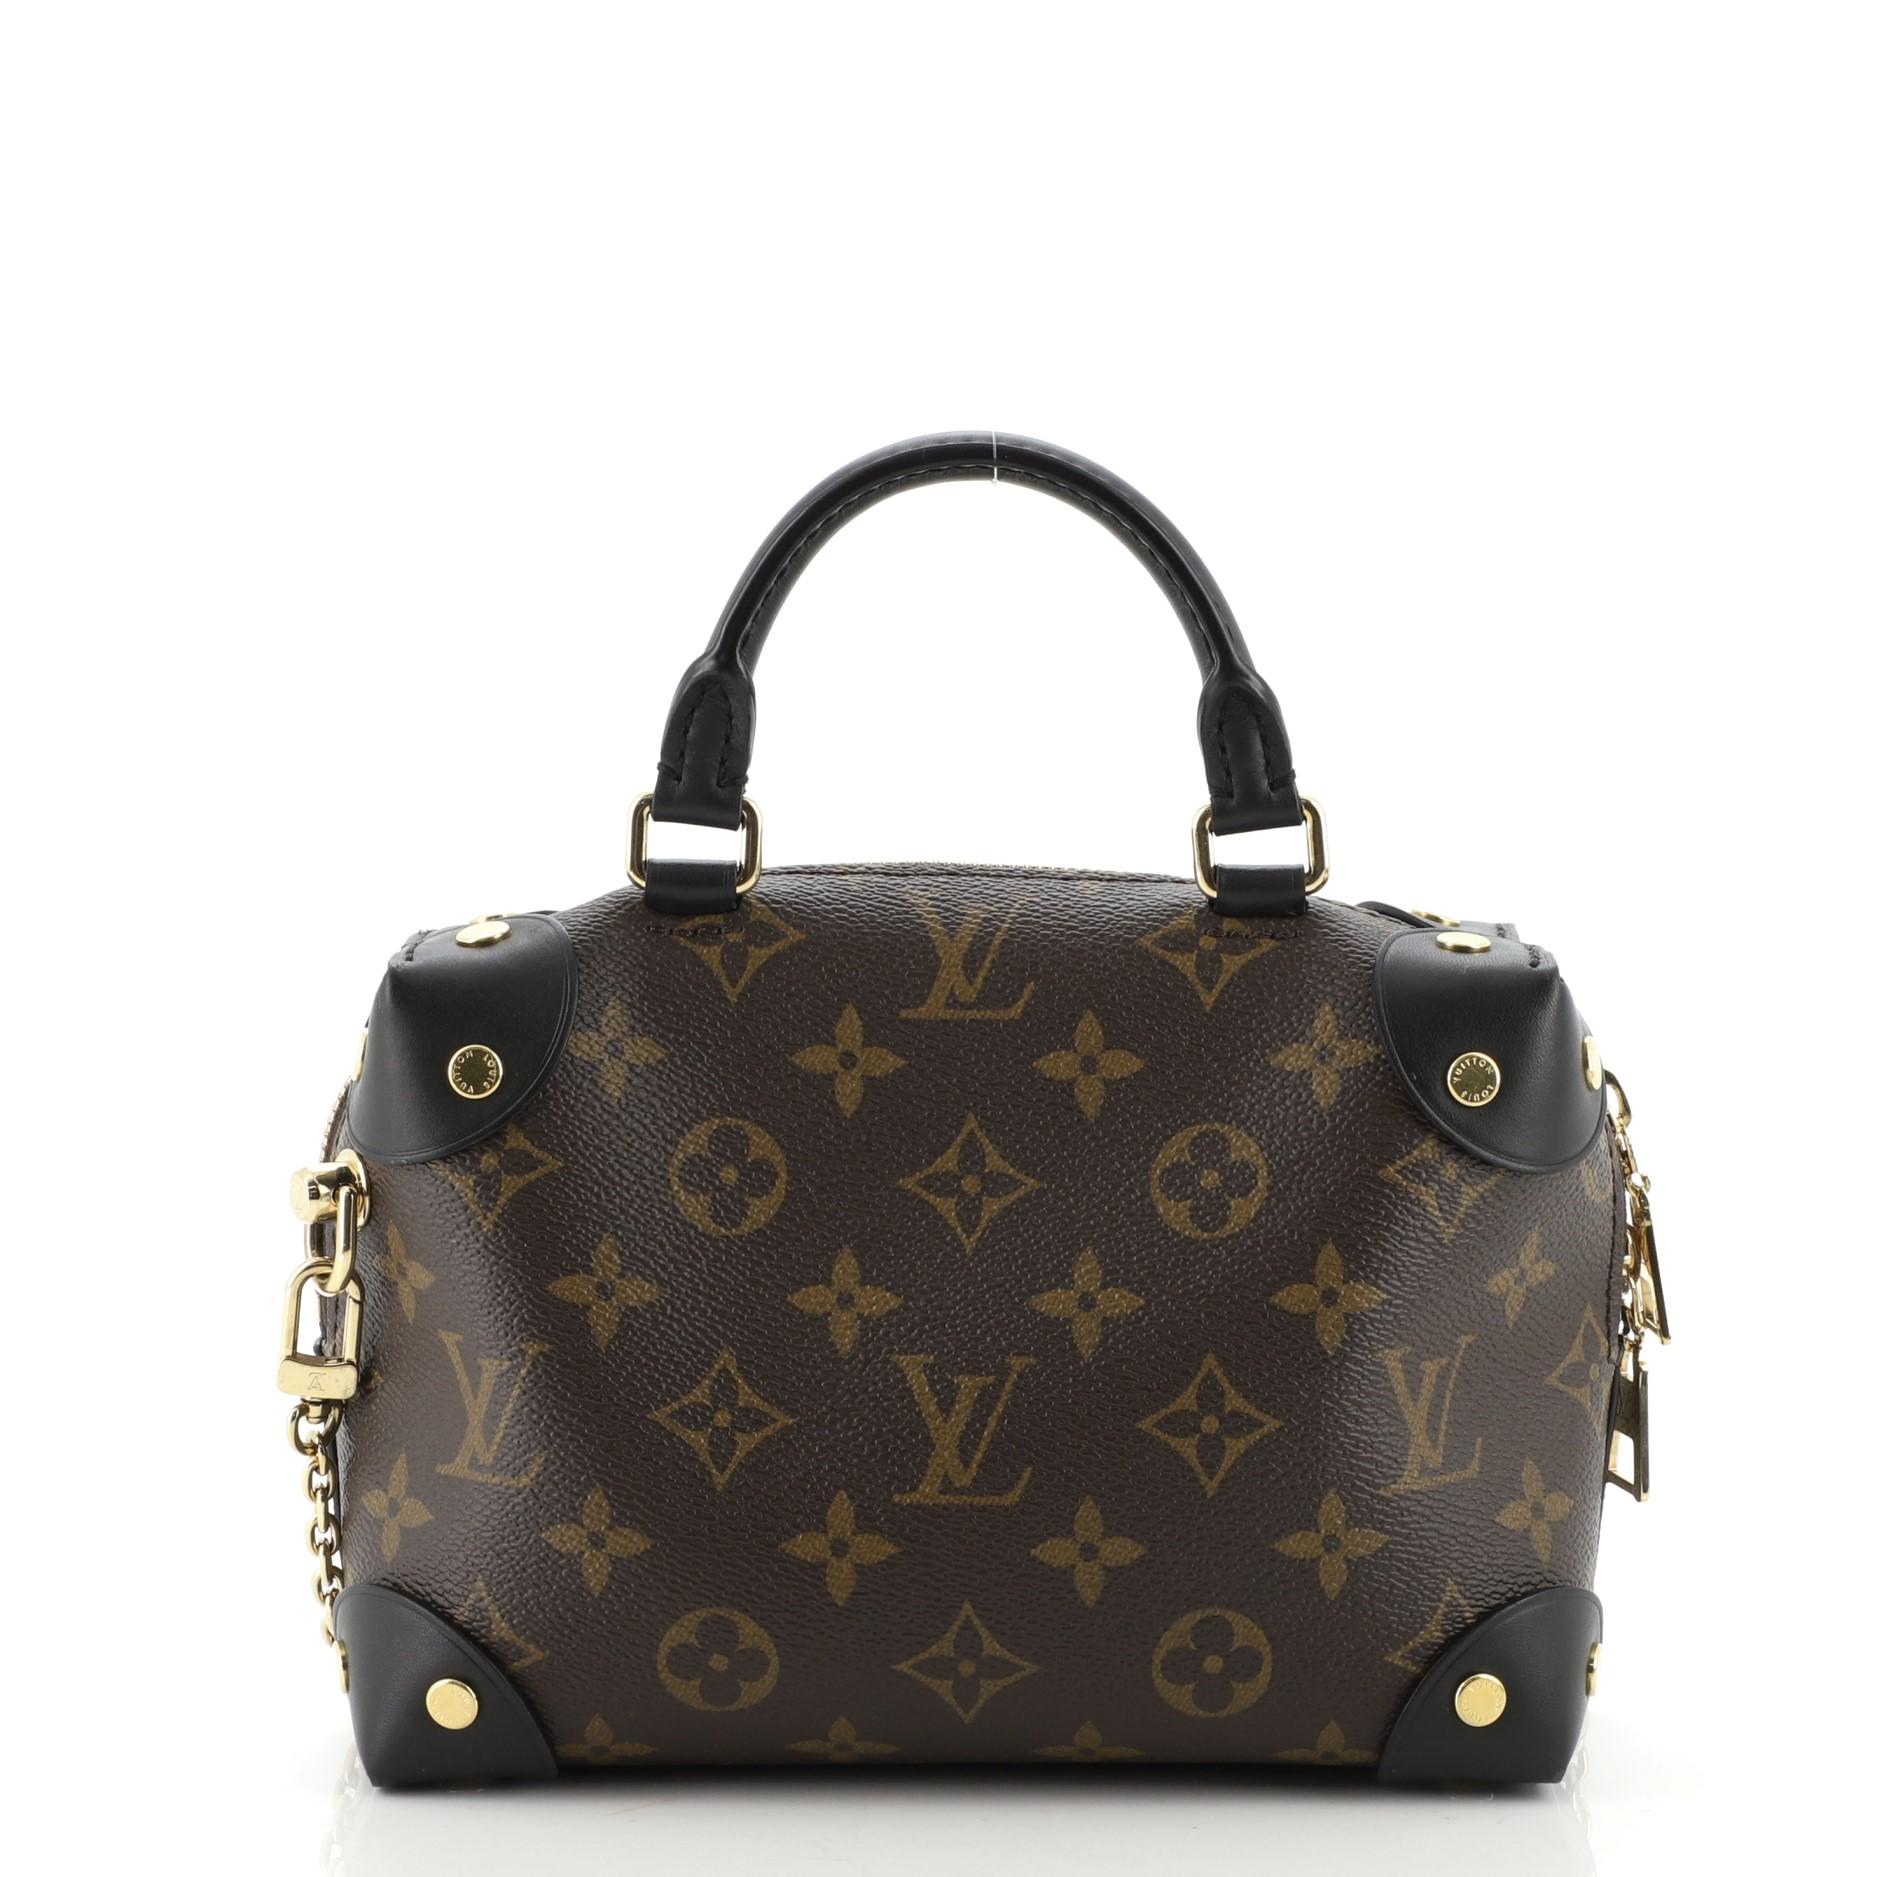 Black Louis Vuitton Petite Malle Souple Handbag Monogram Canvas